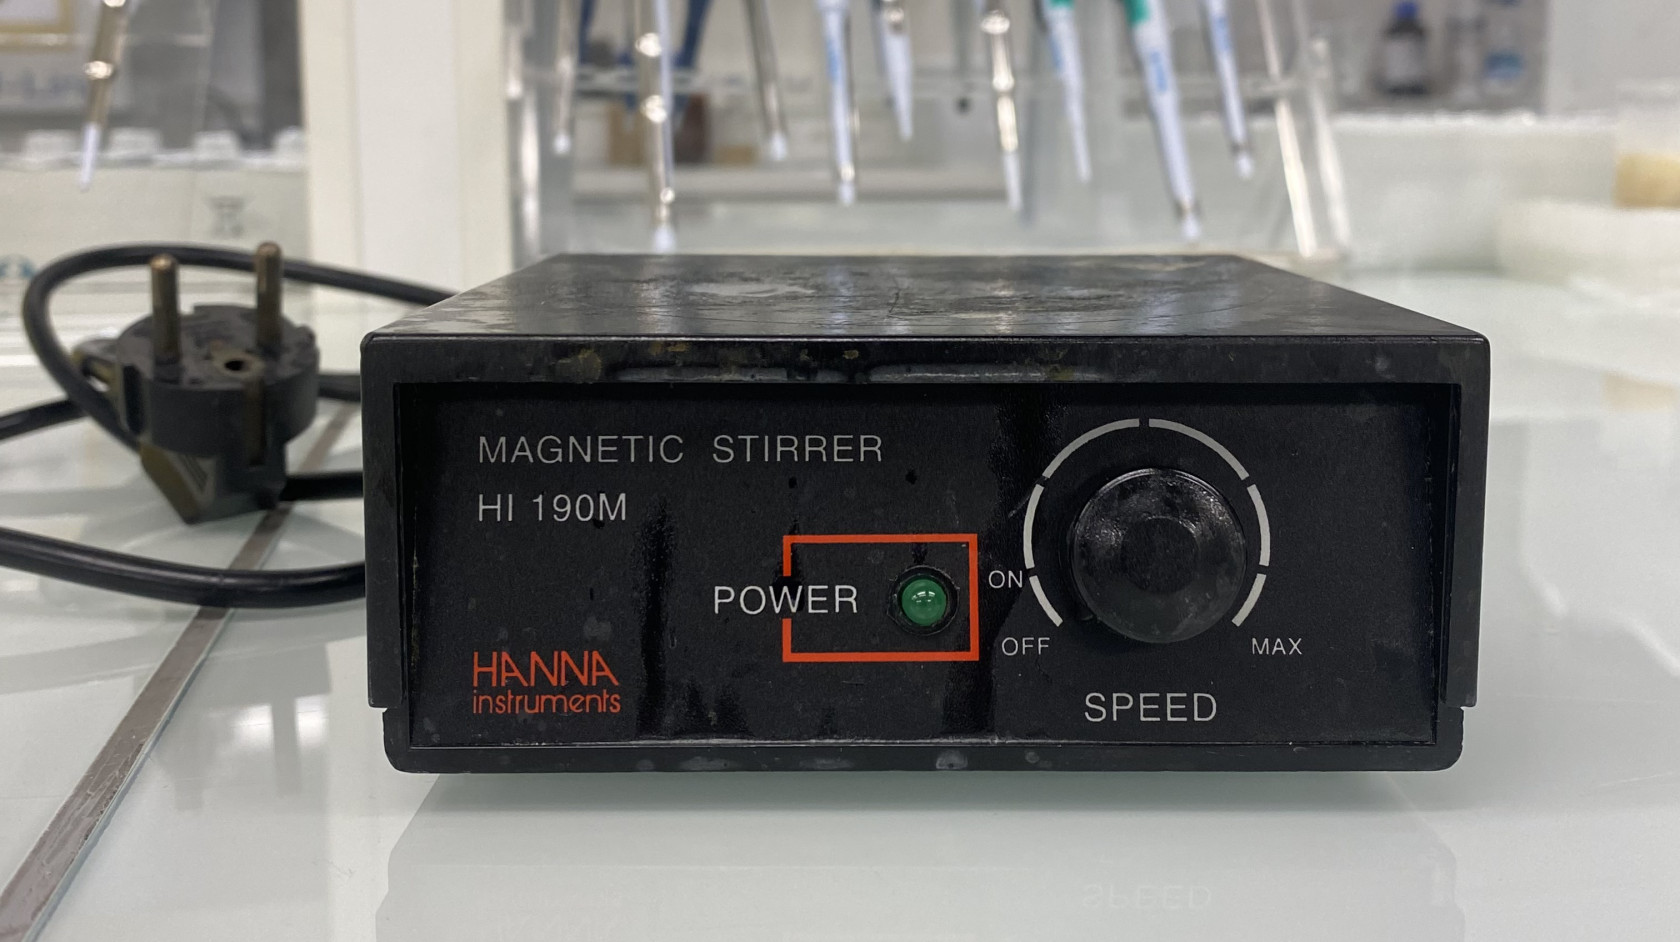 Hanna instruments - agitateur magnétique.jpeg